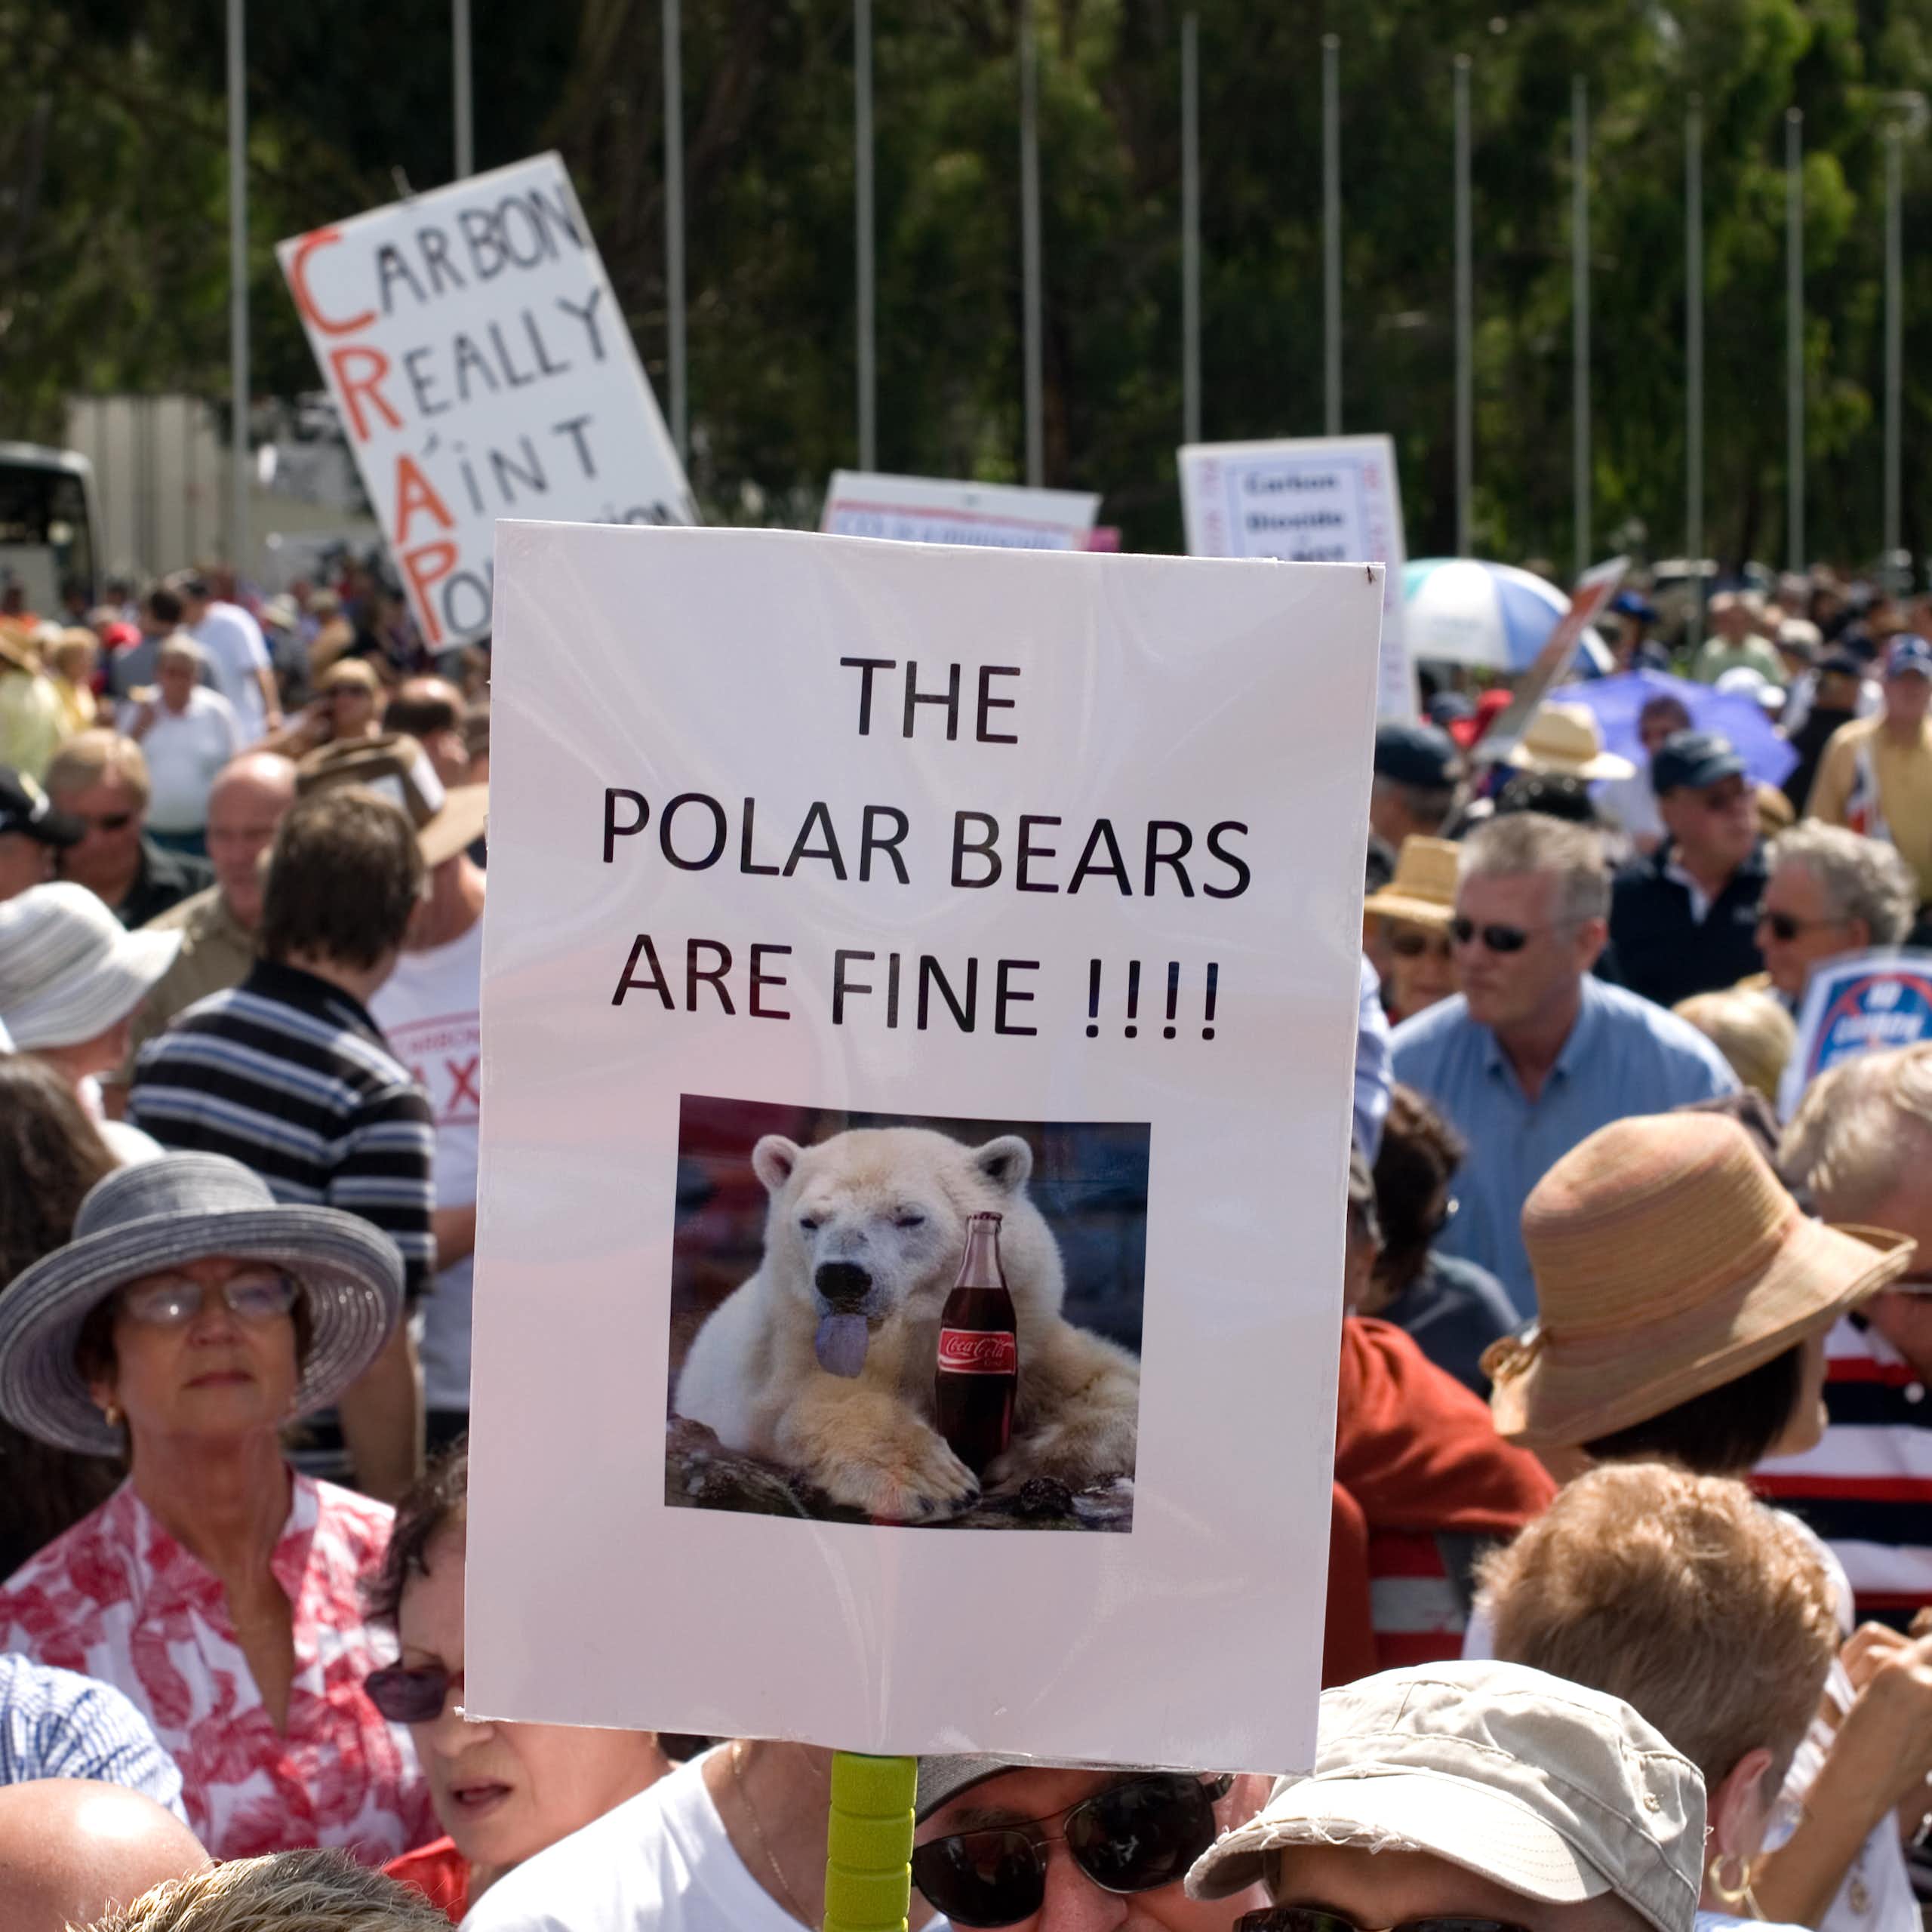  Pancarte climatosceptique où l'on peut lire " The Polar Bears are fine !!! "au milieu d'une manifestation australienne anti taxe carbone. 